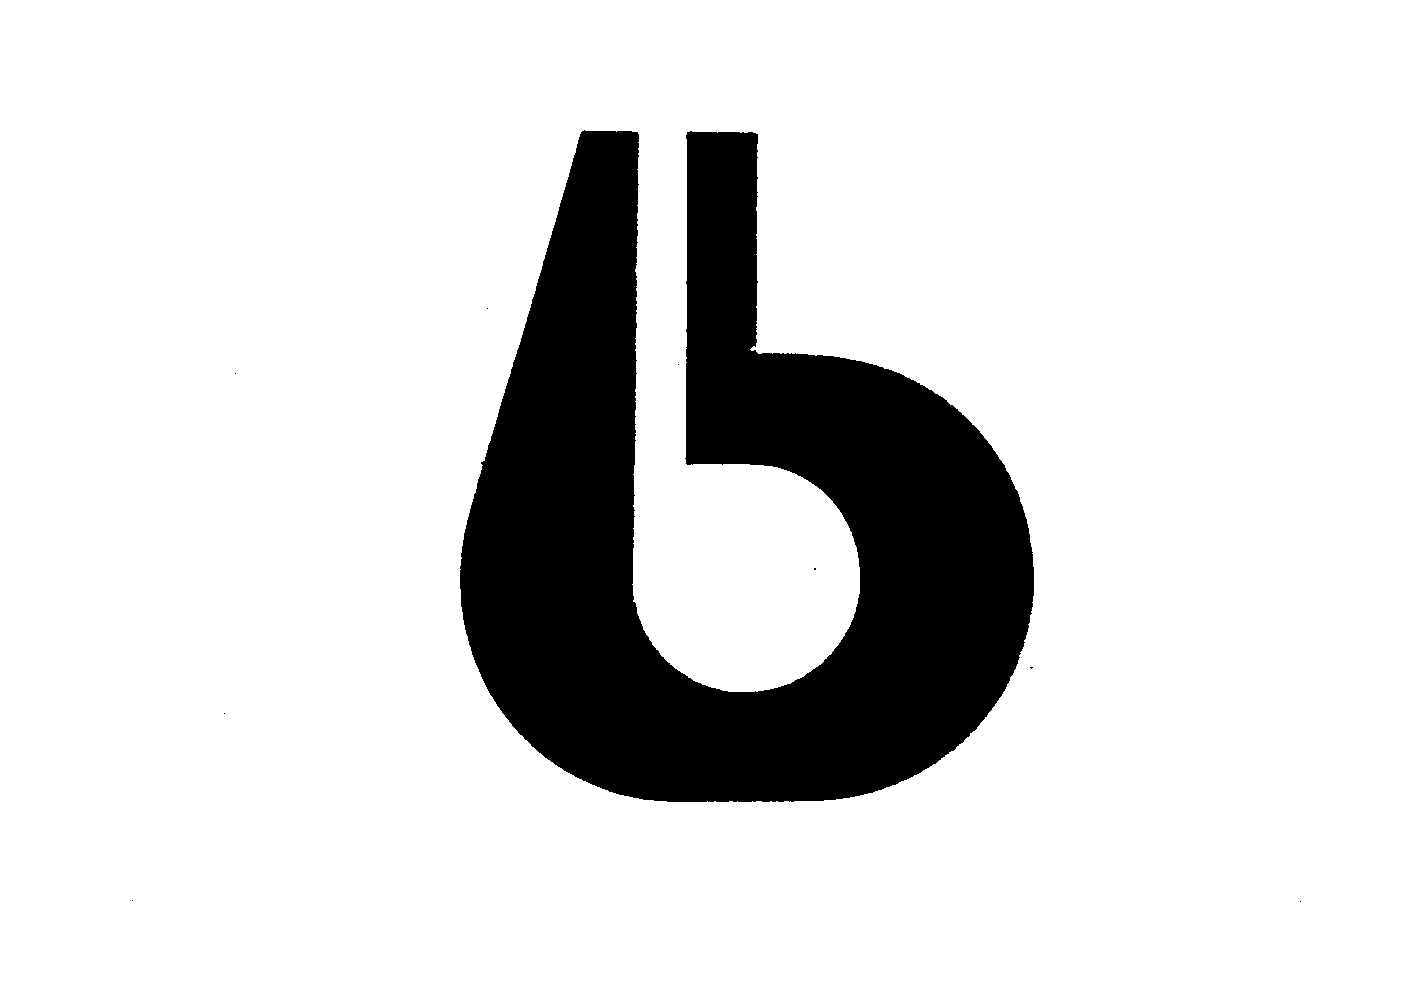  B